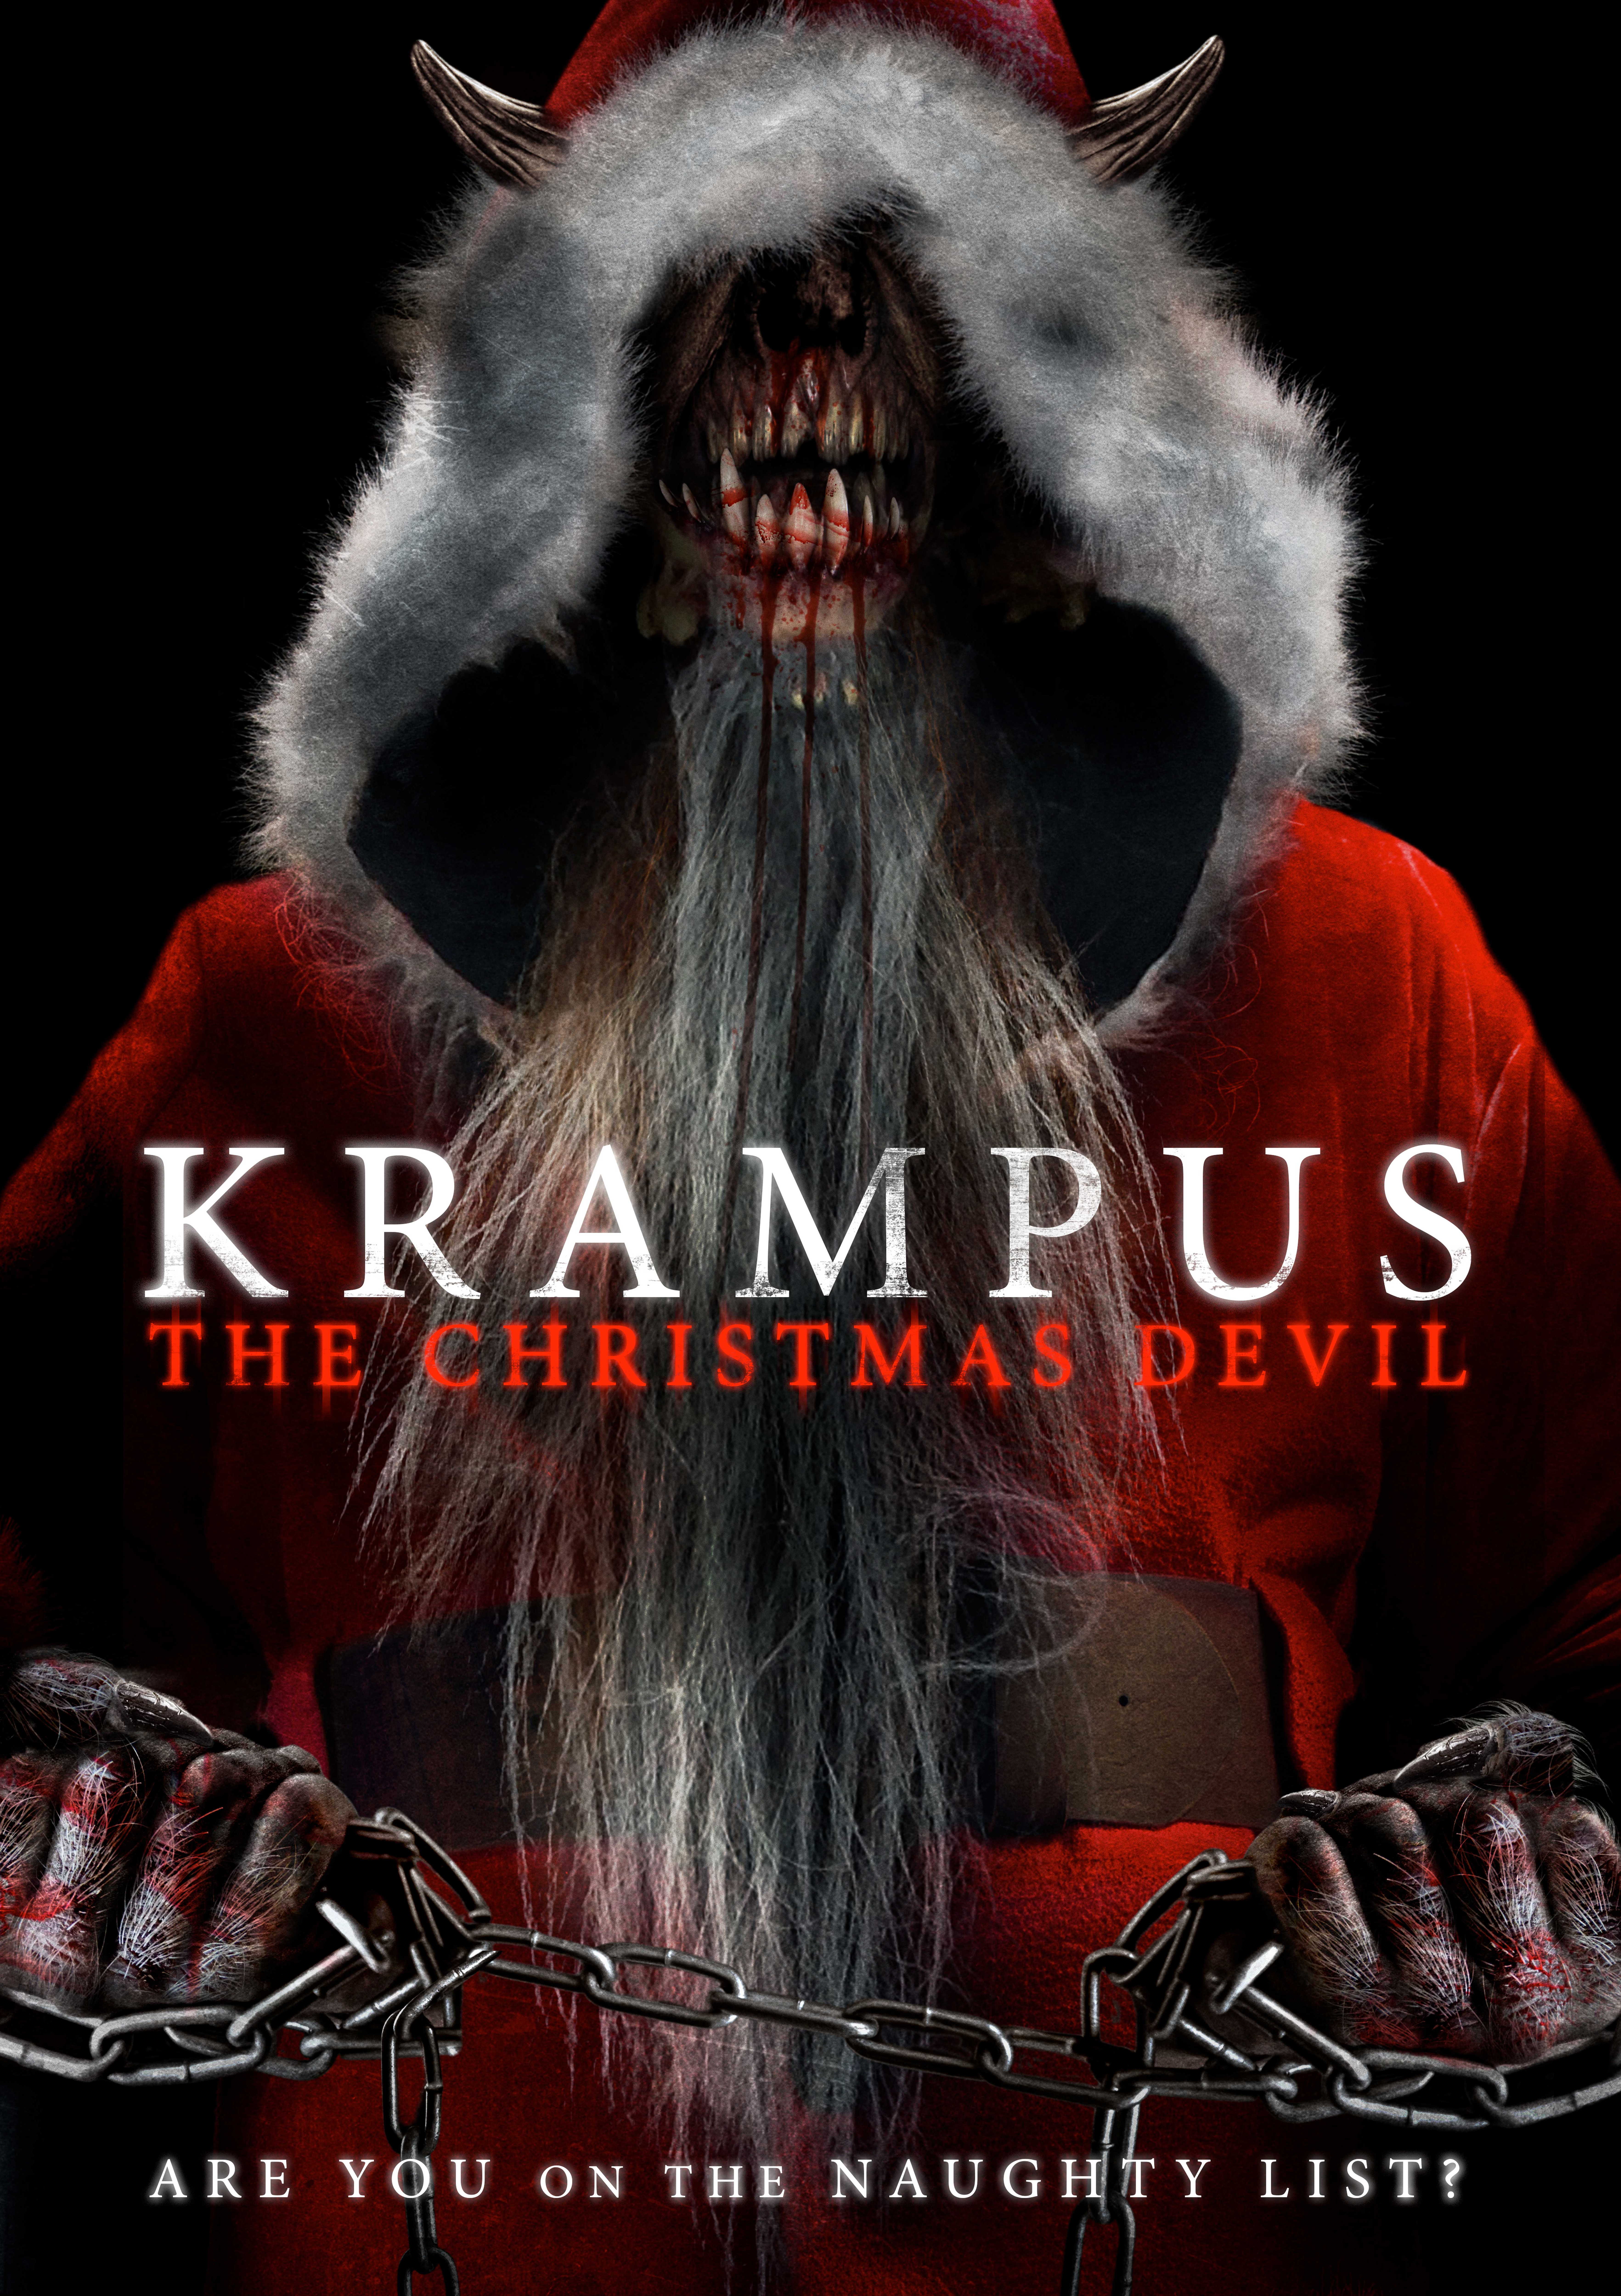 Nonton film Krampus The Christmas Devil layarkaca21 indoxx1 ganool online streaming terbaru